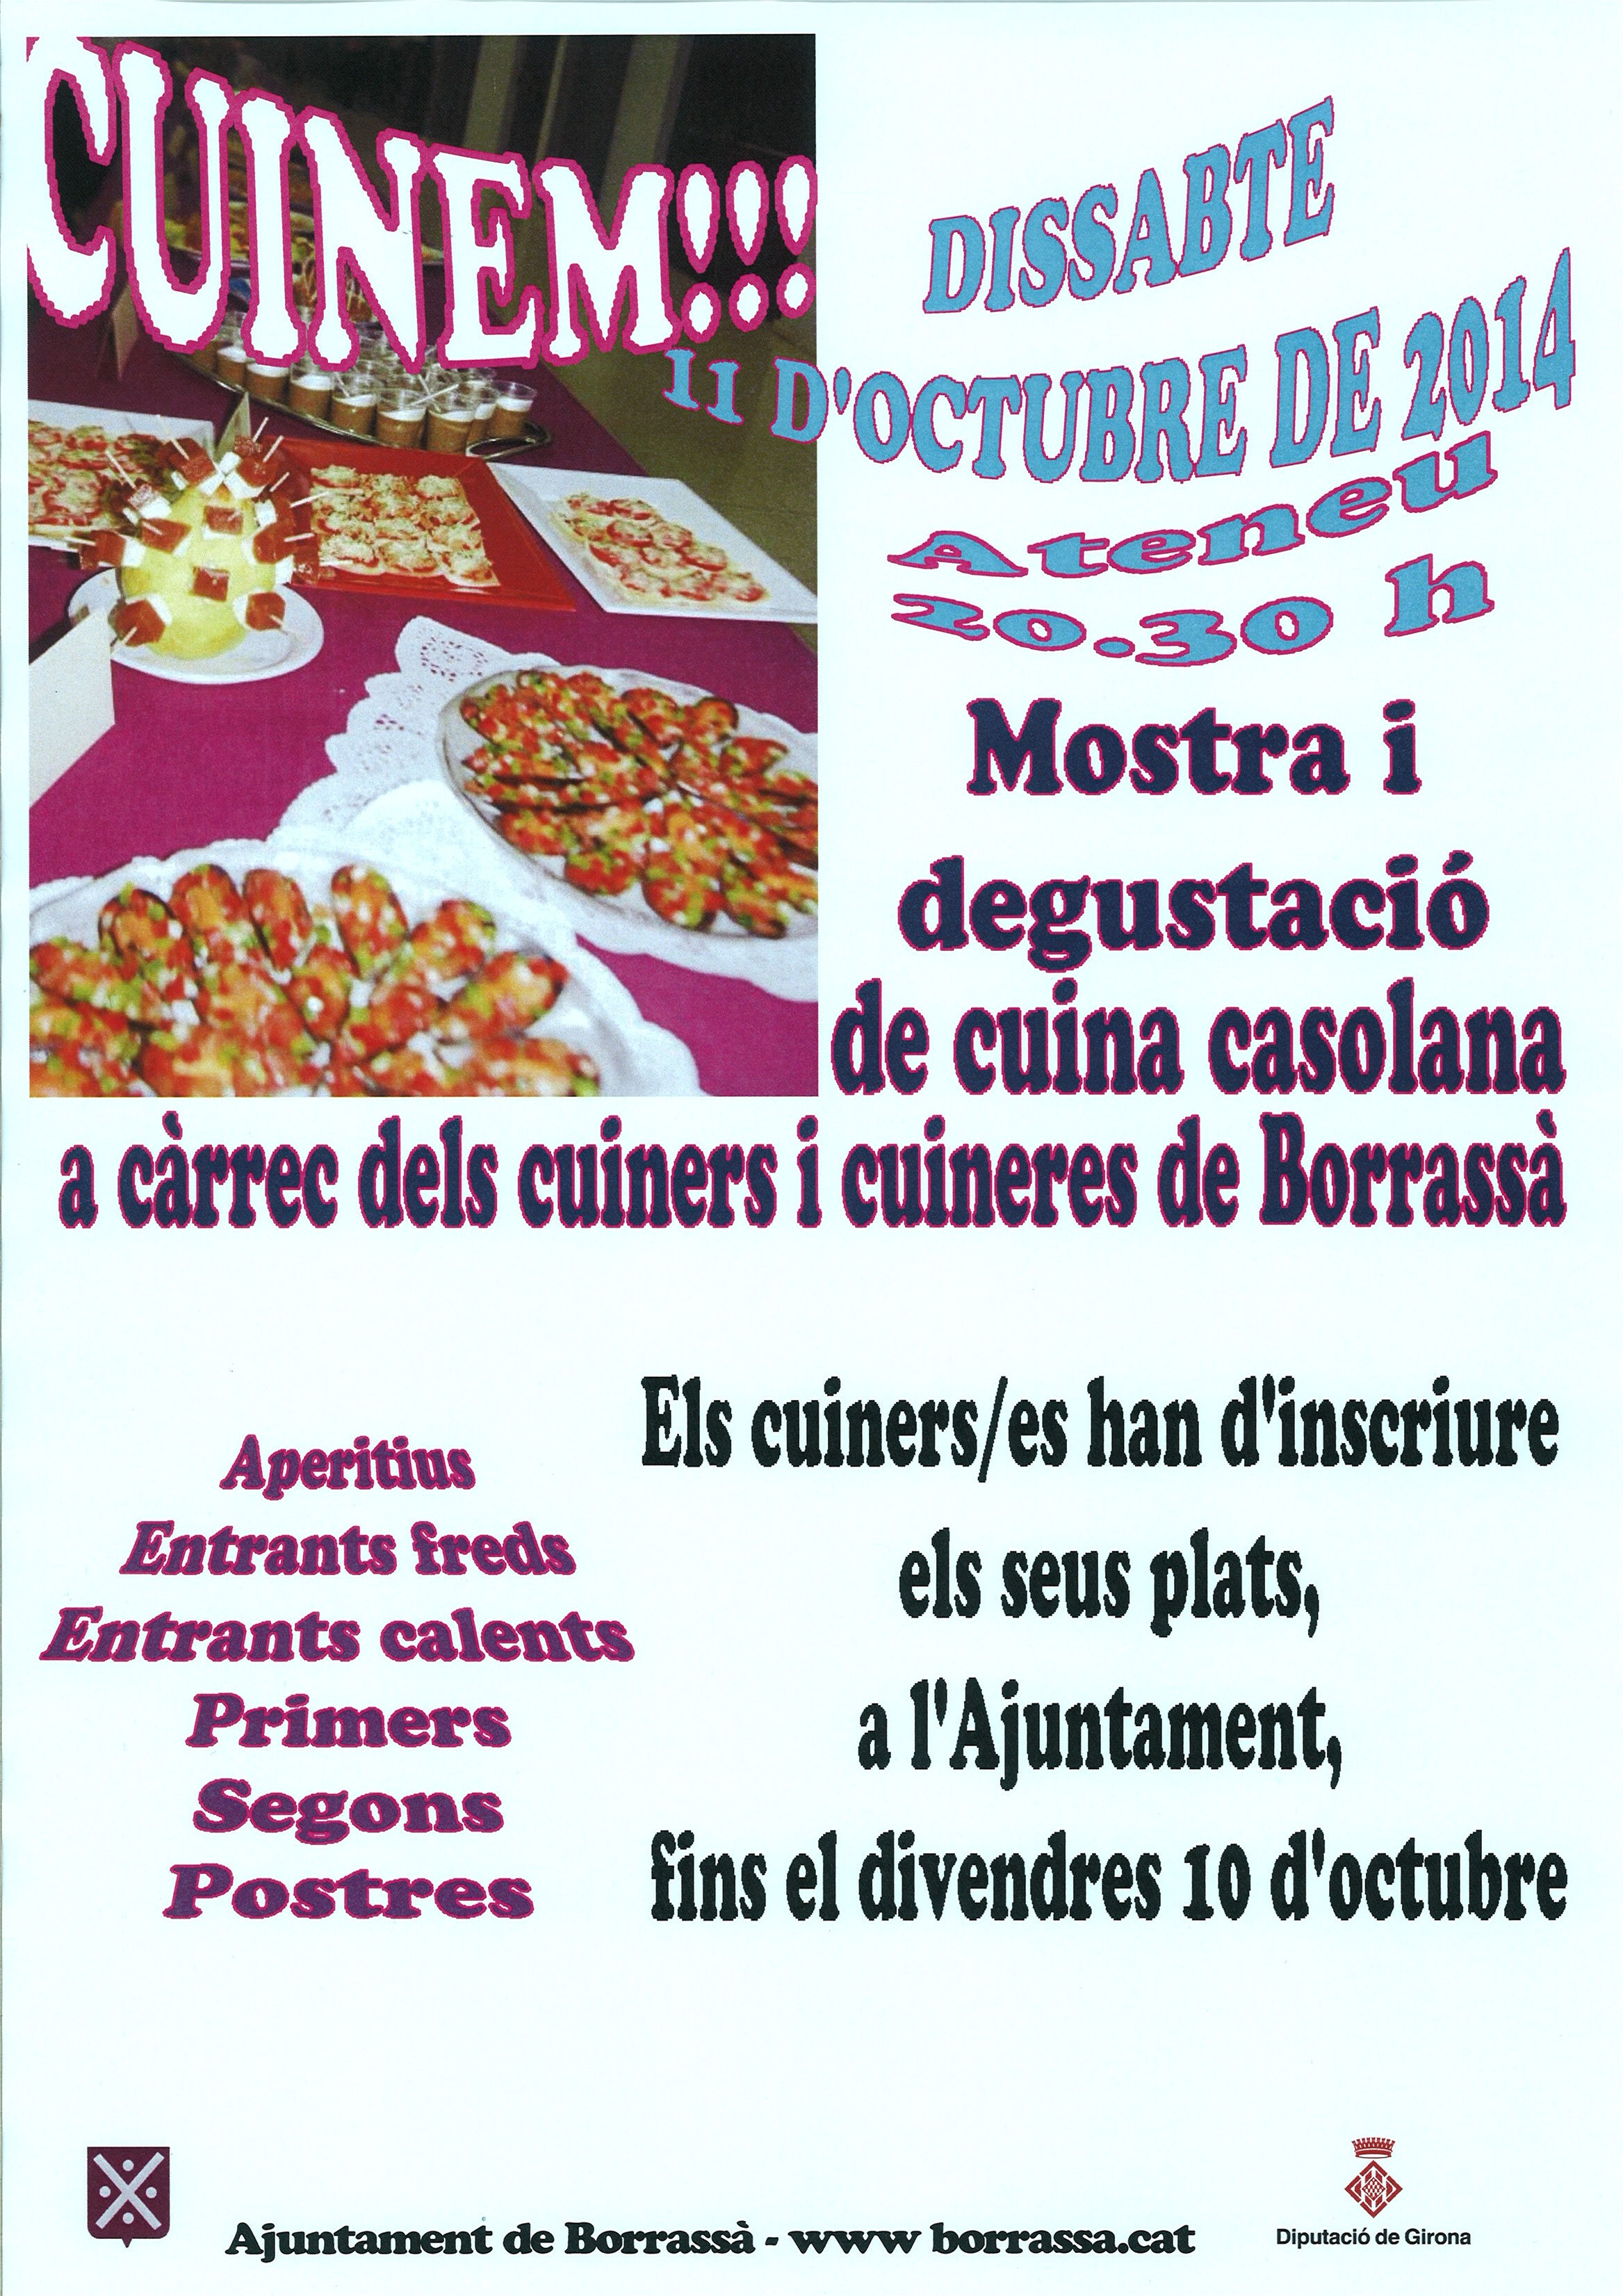 El dissabte 11 d'octubre, tindrà lloc una nova edició del Cuinem!!!, la mostra de cuina casolana de Borrassà. Els cuiners i cuineres han d'inscriure els seus plats a l'Ajuntament. Hi ha temps fins el 10 d'octubre.